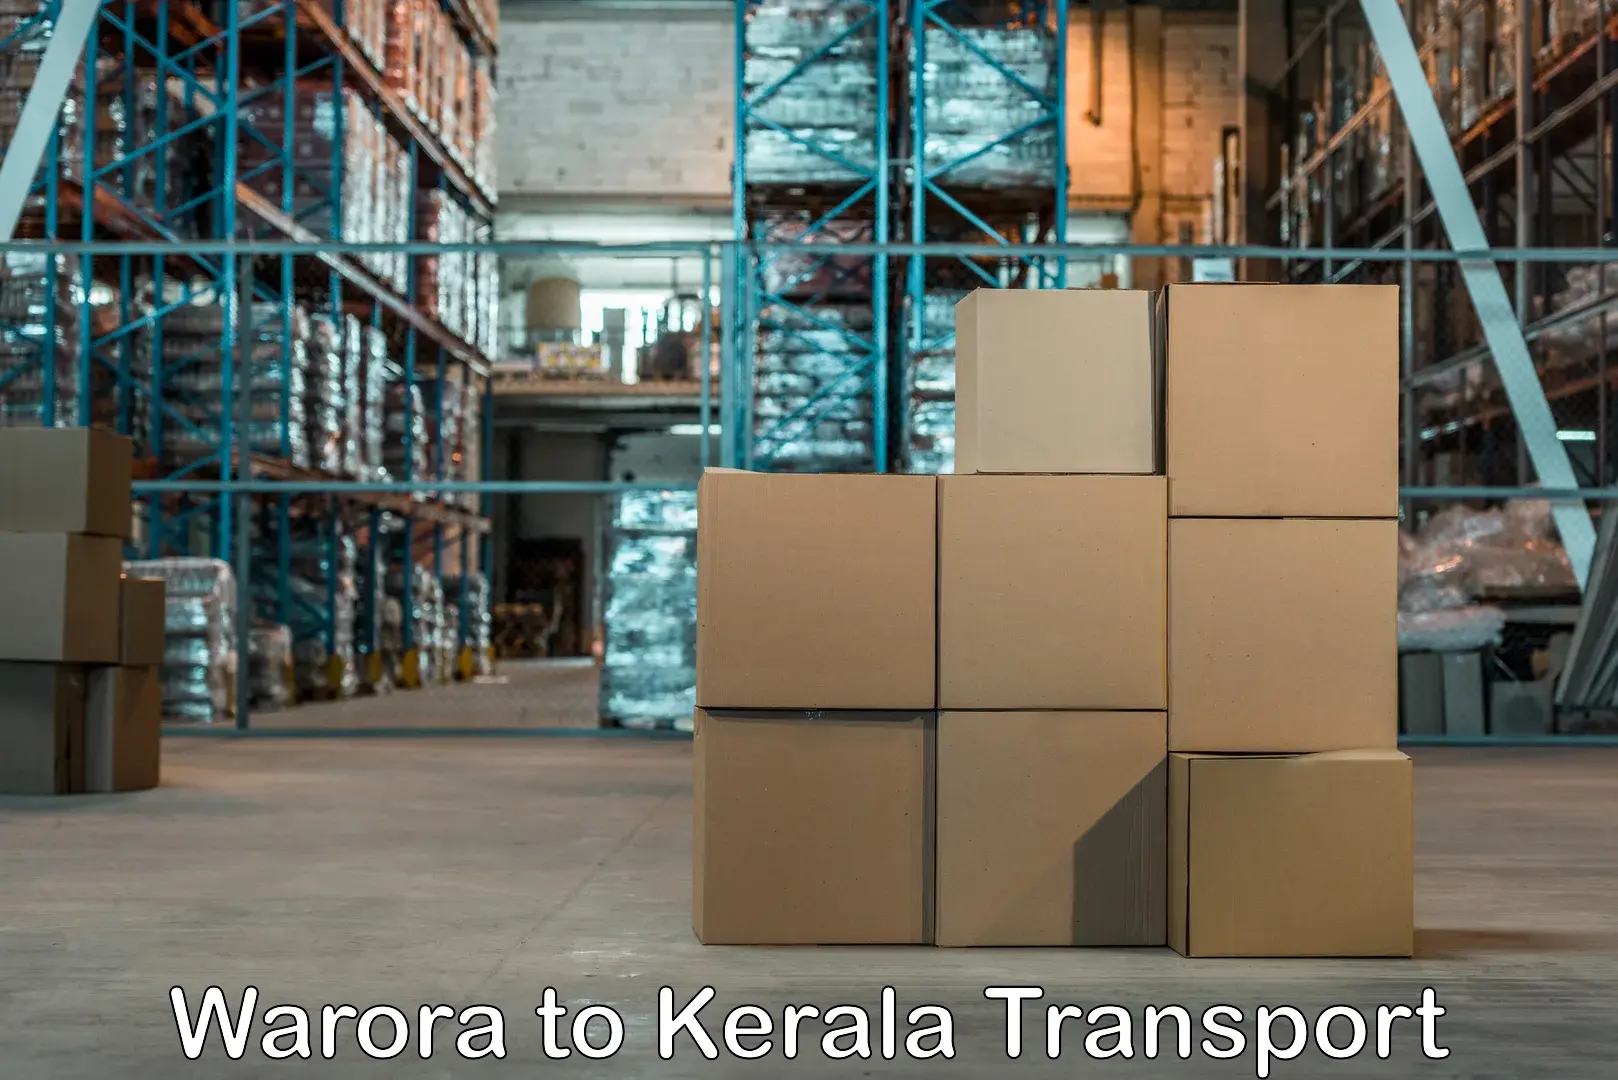 Air freight transport services Warora to Trivandrum